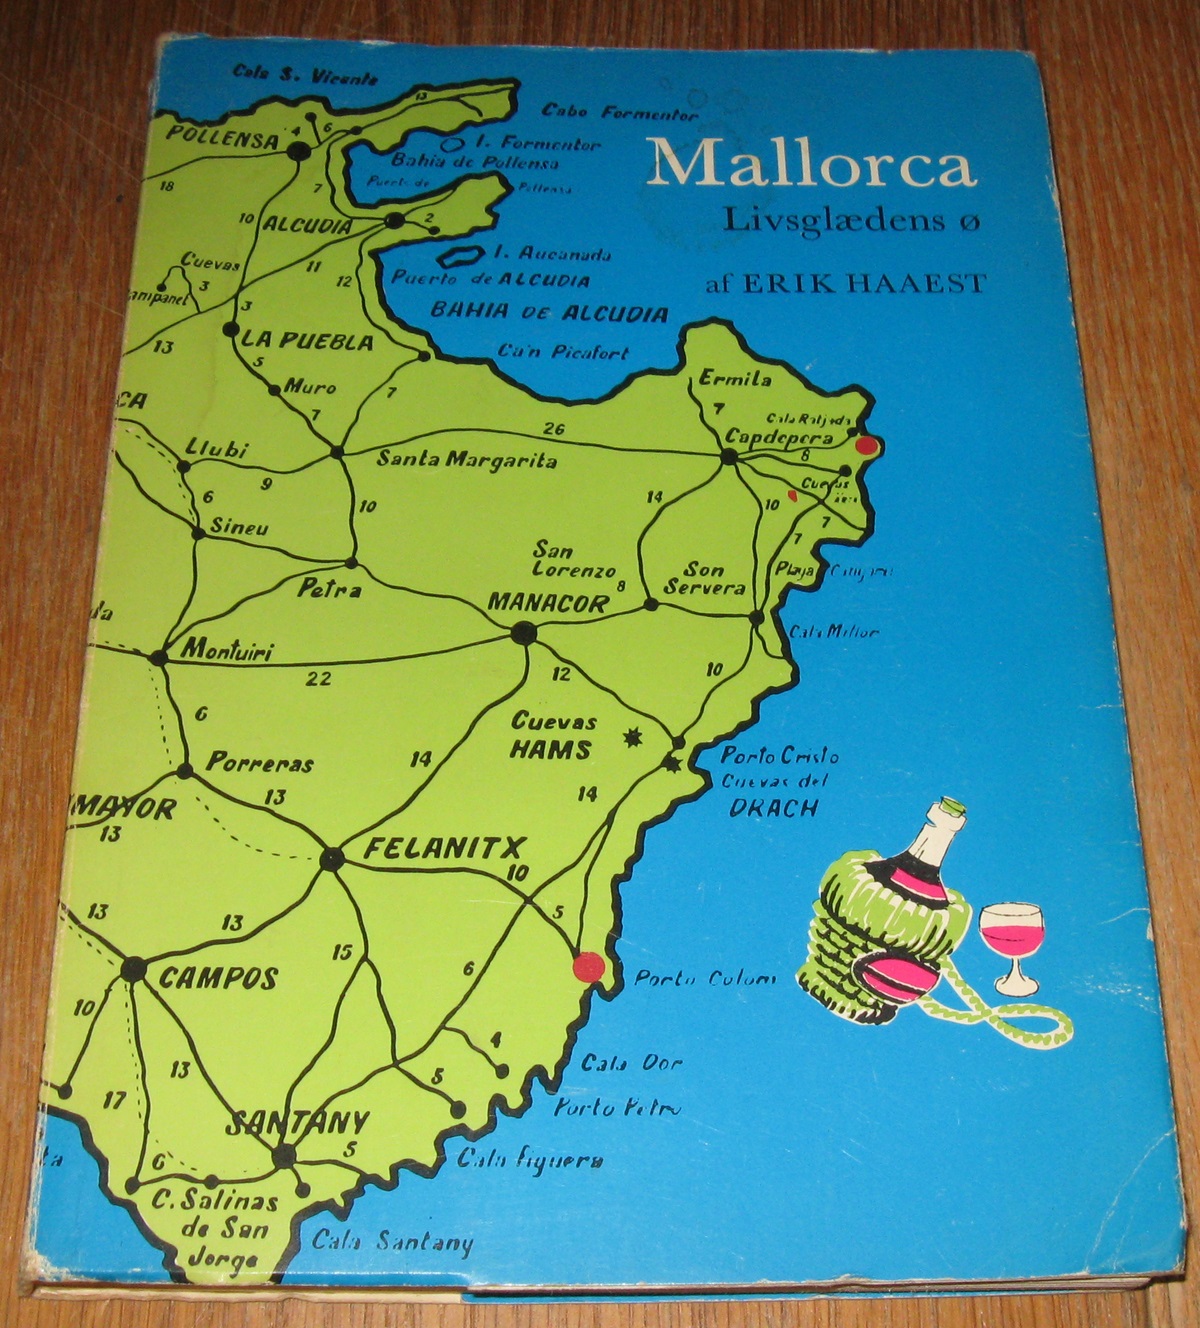 Mallorca, Livsglædens ø